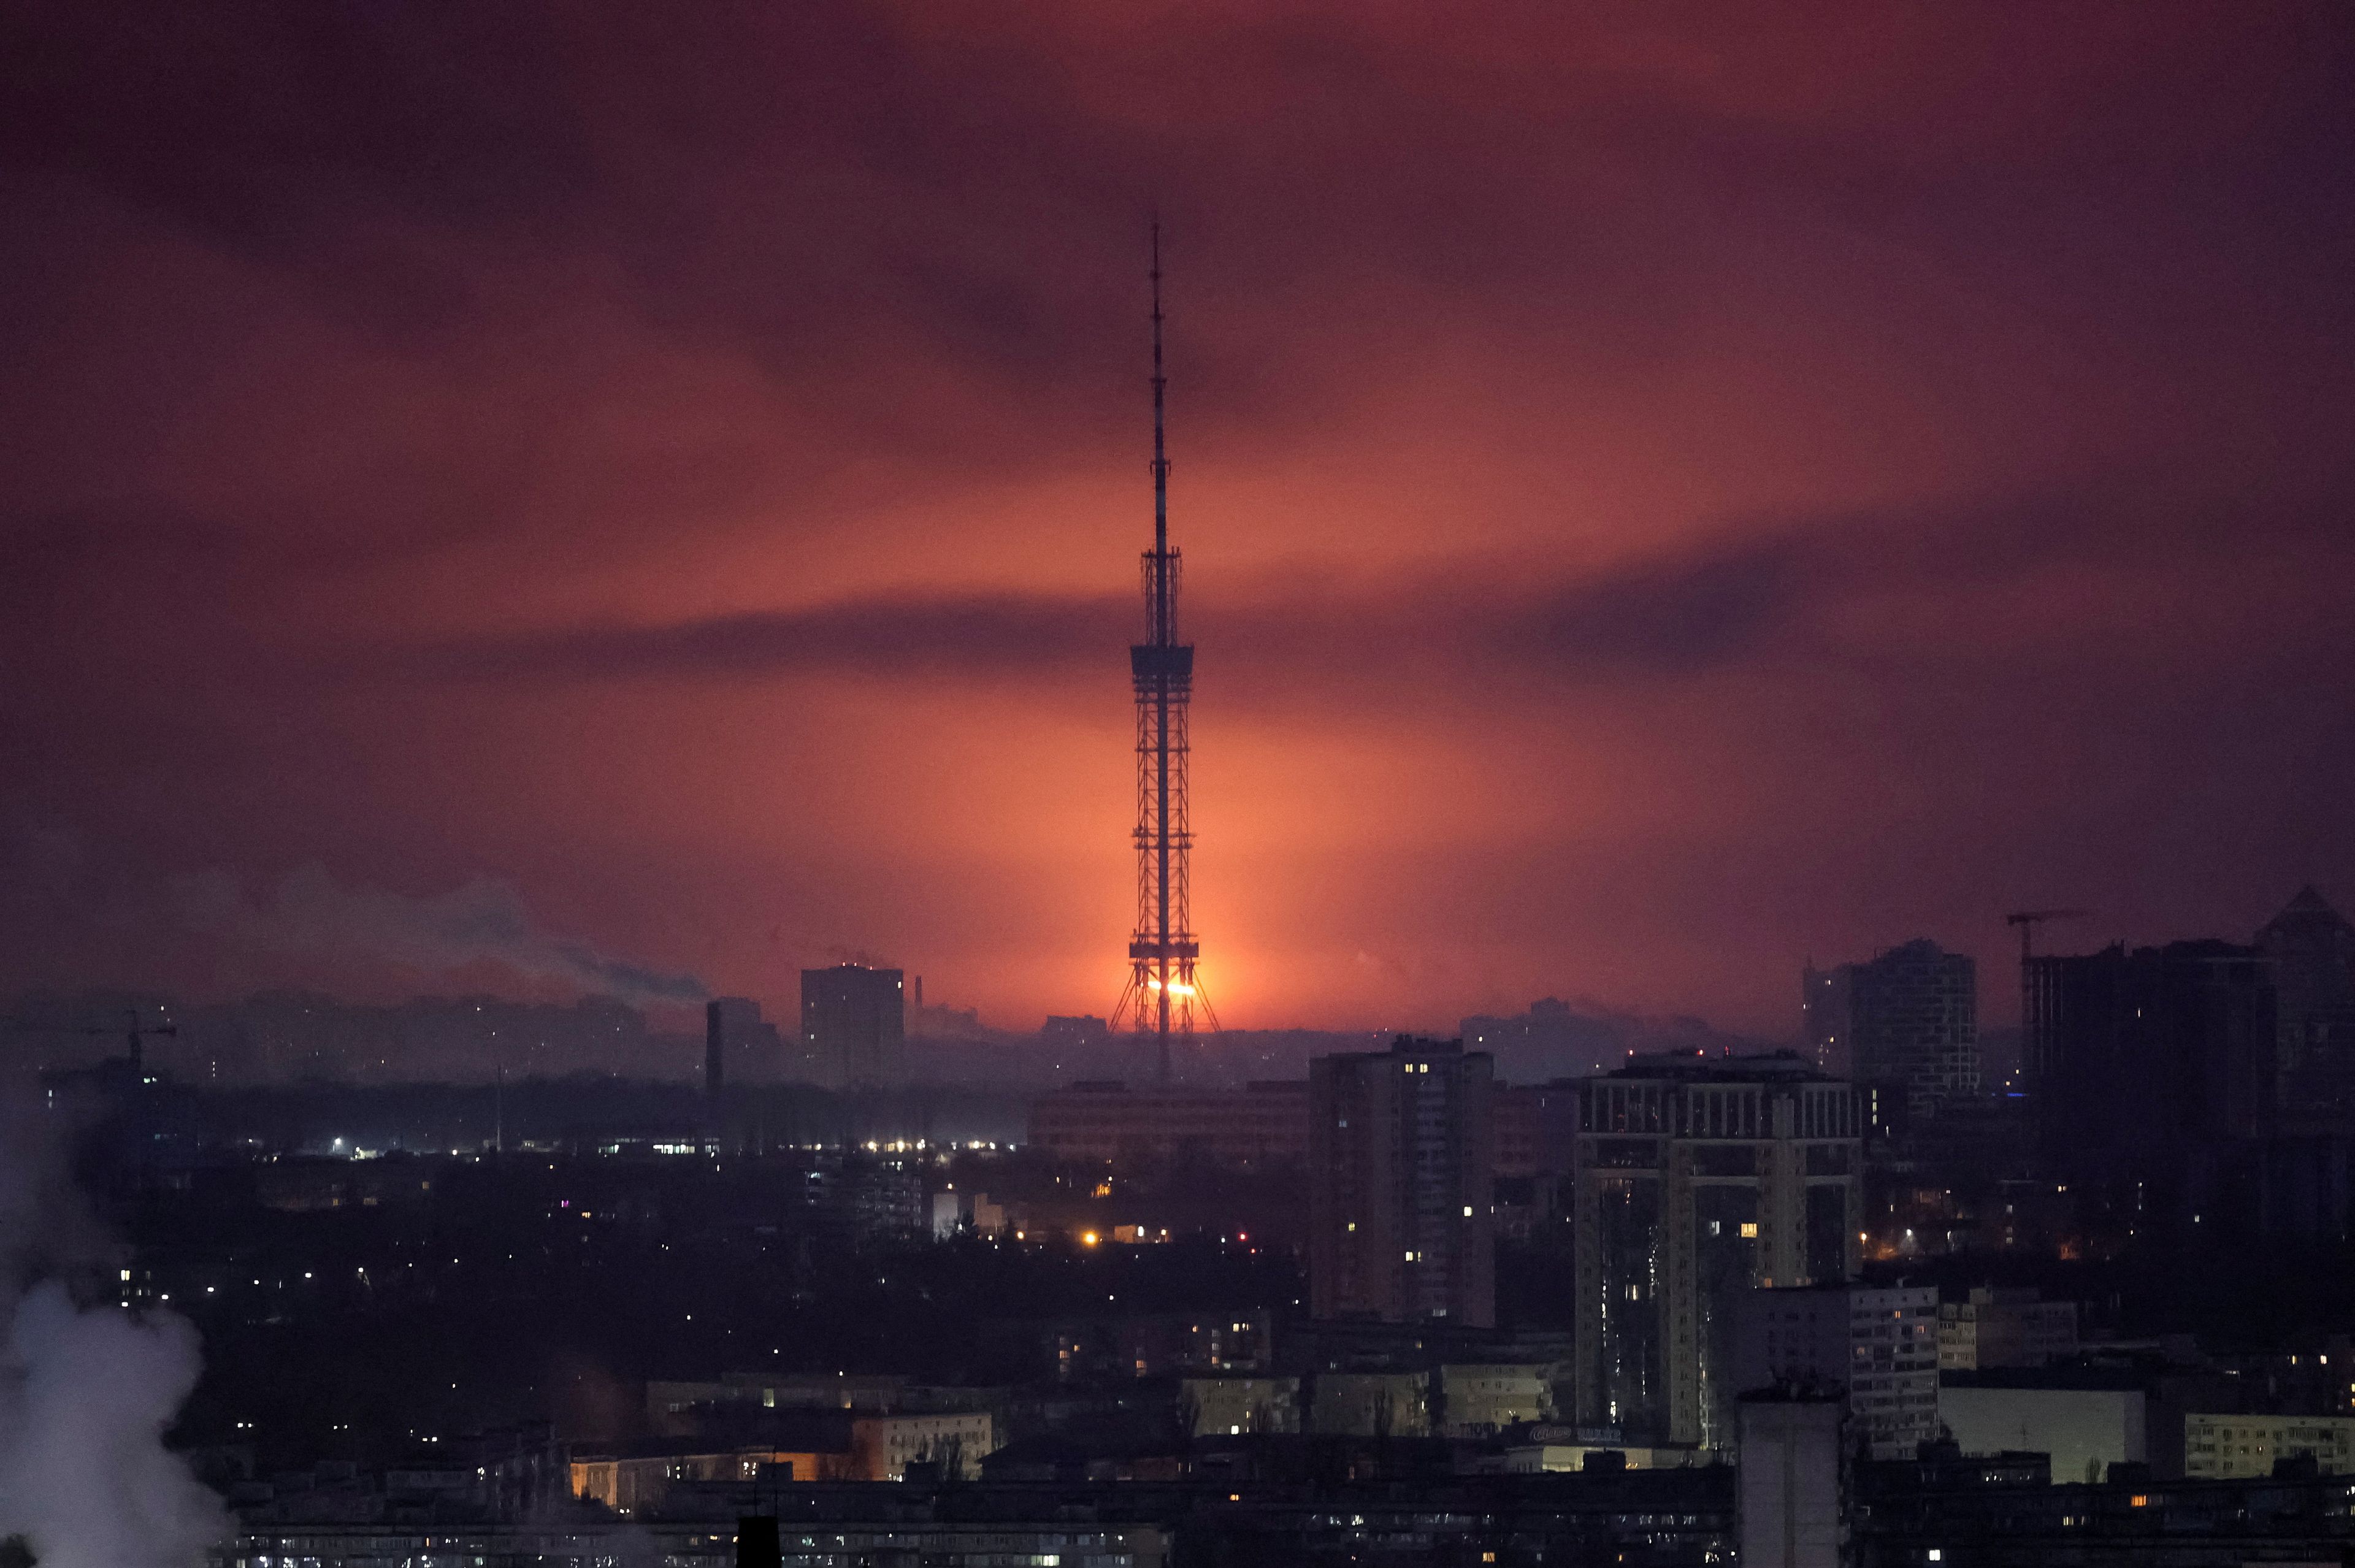 La foto del día: Rusia ha atacado durante las últimas horas Kiev, la capital de Ucrania, con al menos una treintena de misiles de crucero y balísticos, provocando daños en varios distritos. La imagen muestra la explosión de un misil sobre el ciel.